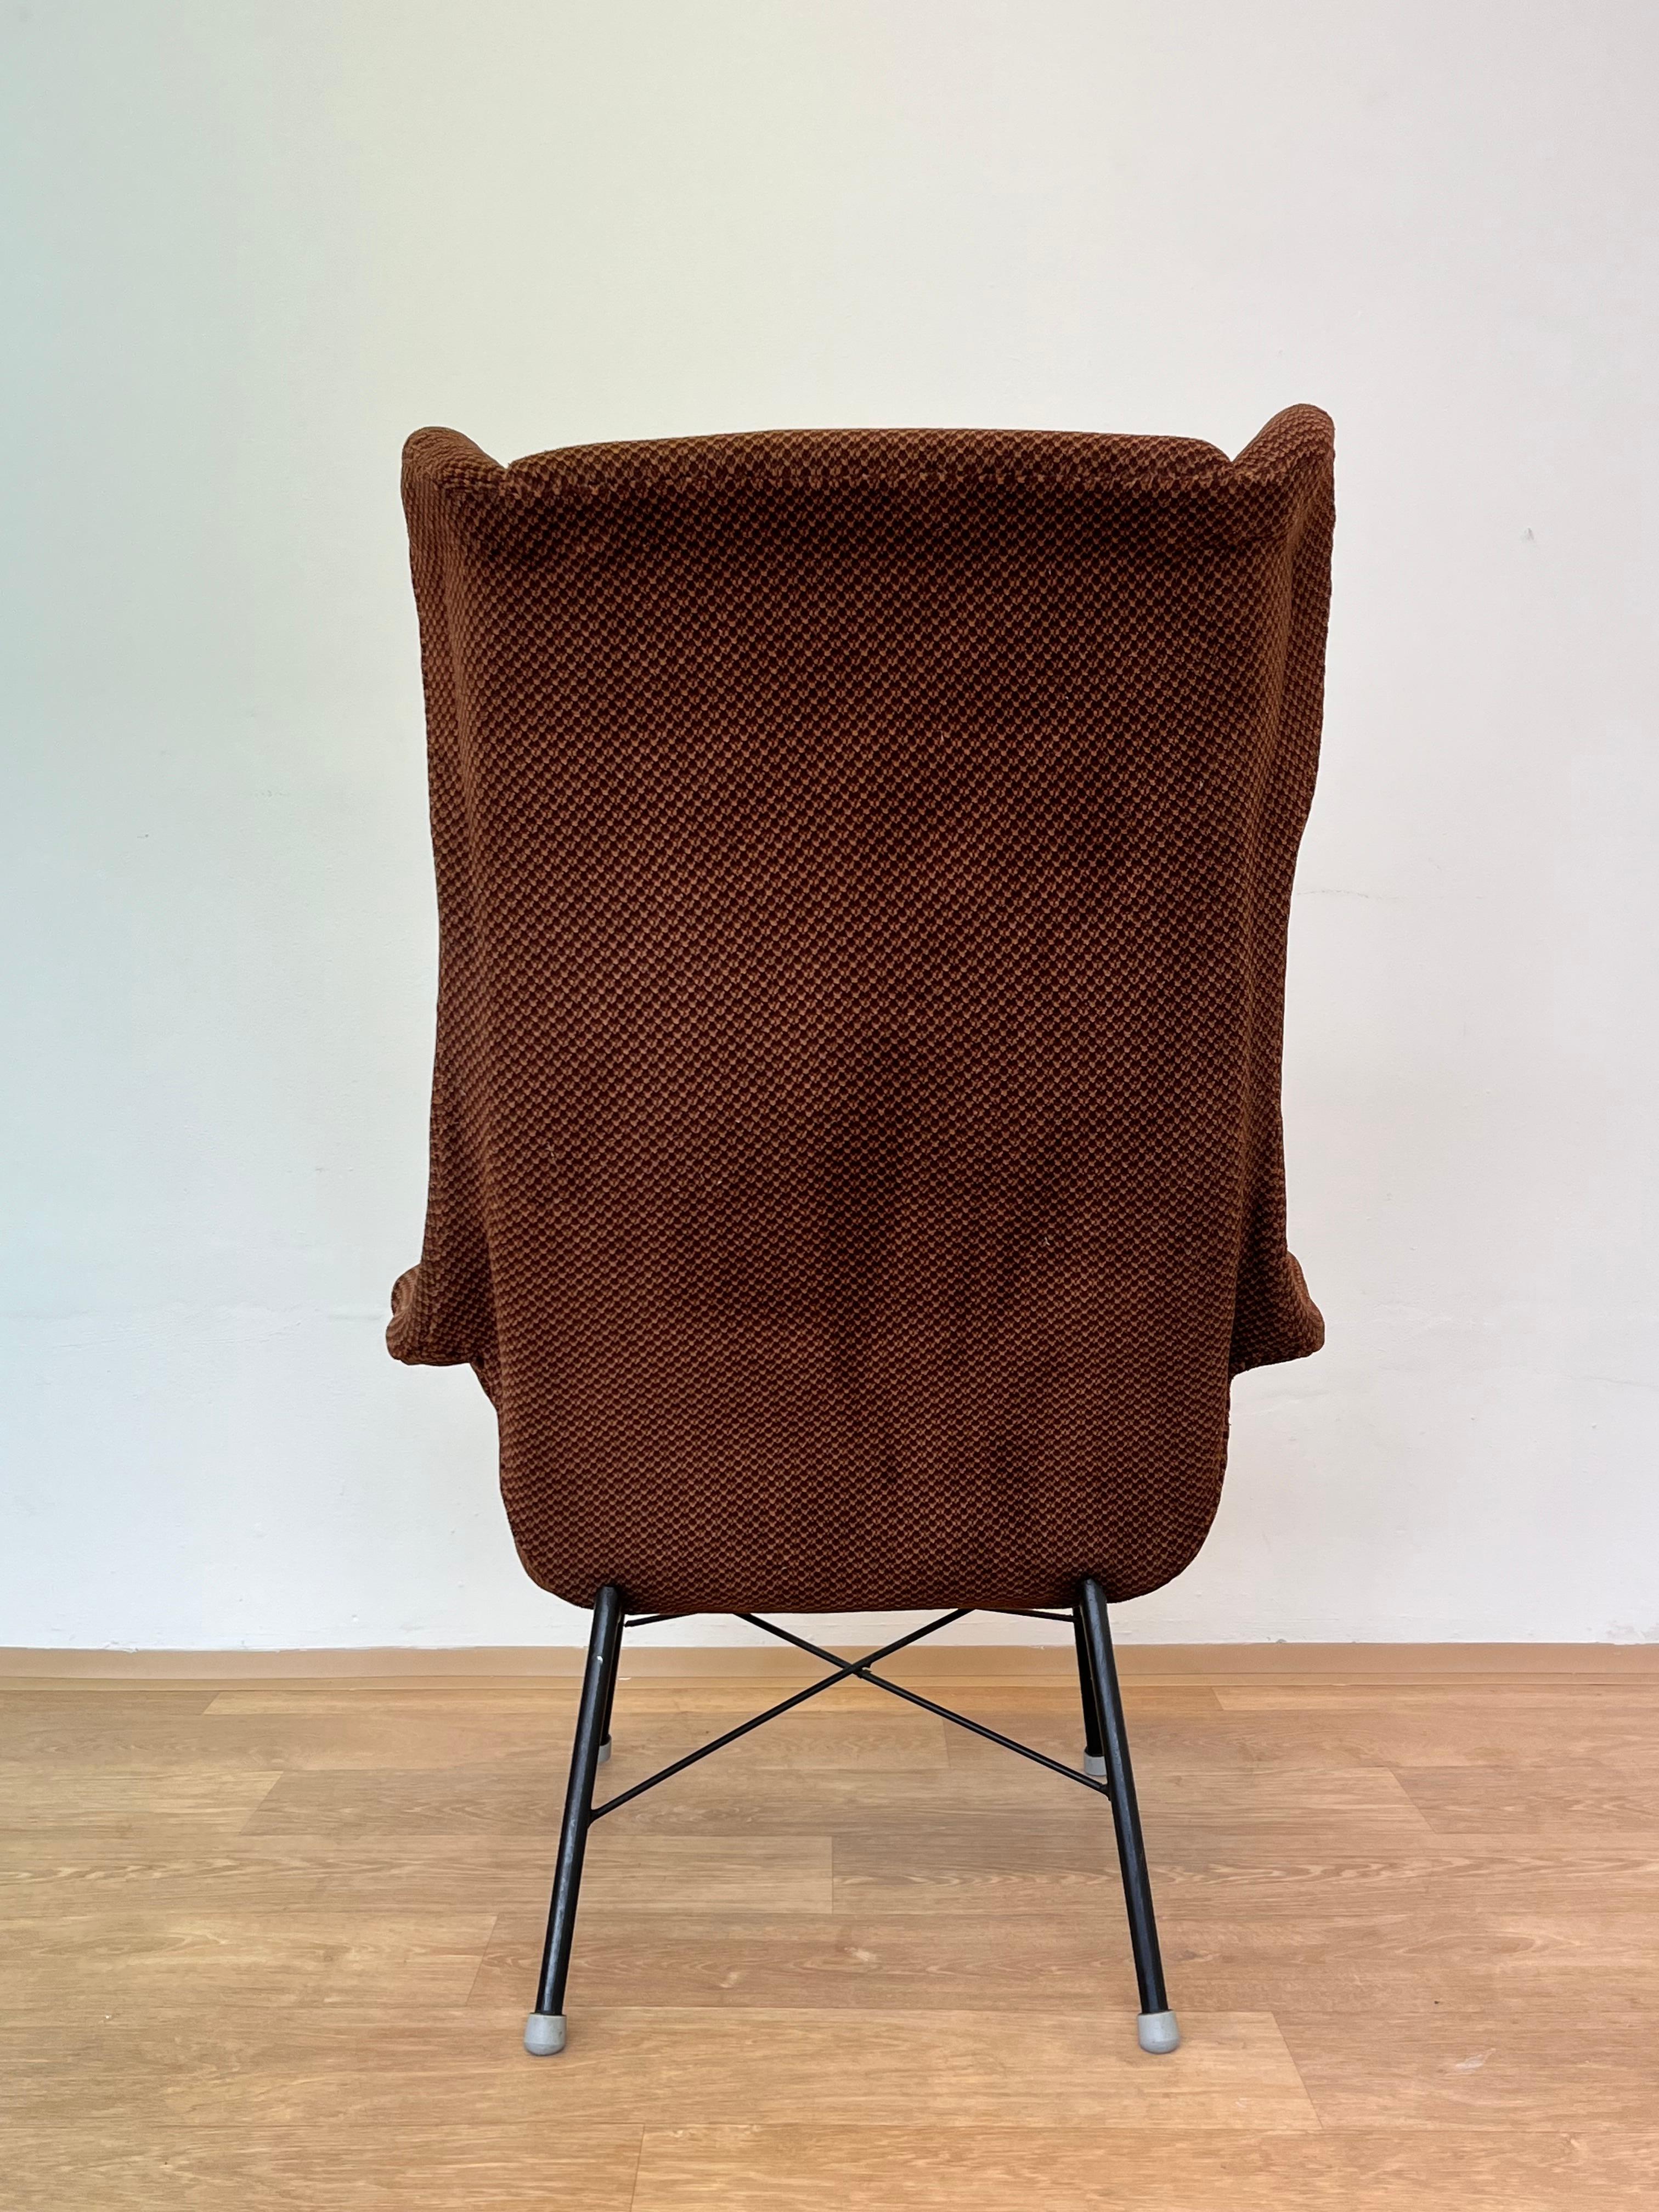 Czech Original Design Fiberglass Wing Chair by Miroslav Navratil, 1970s For Sale